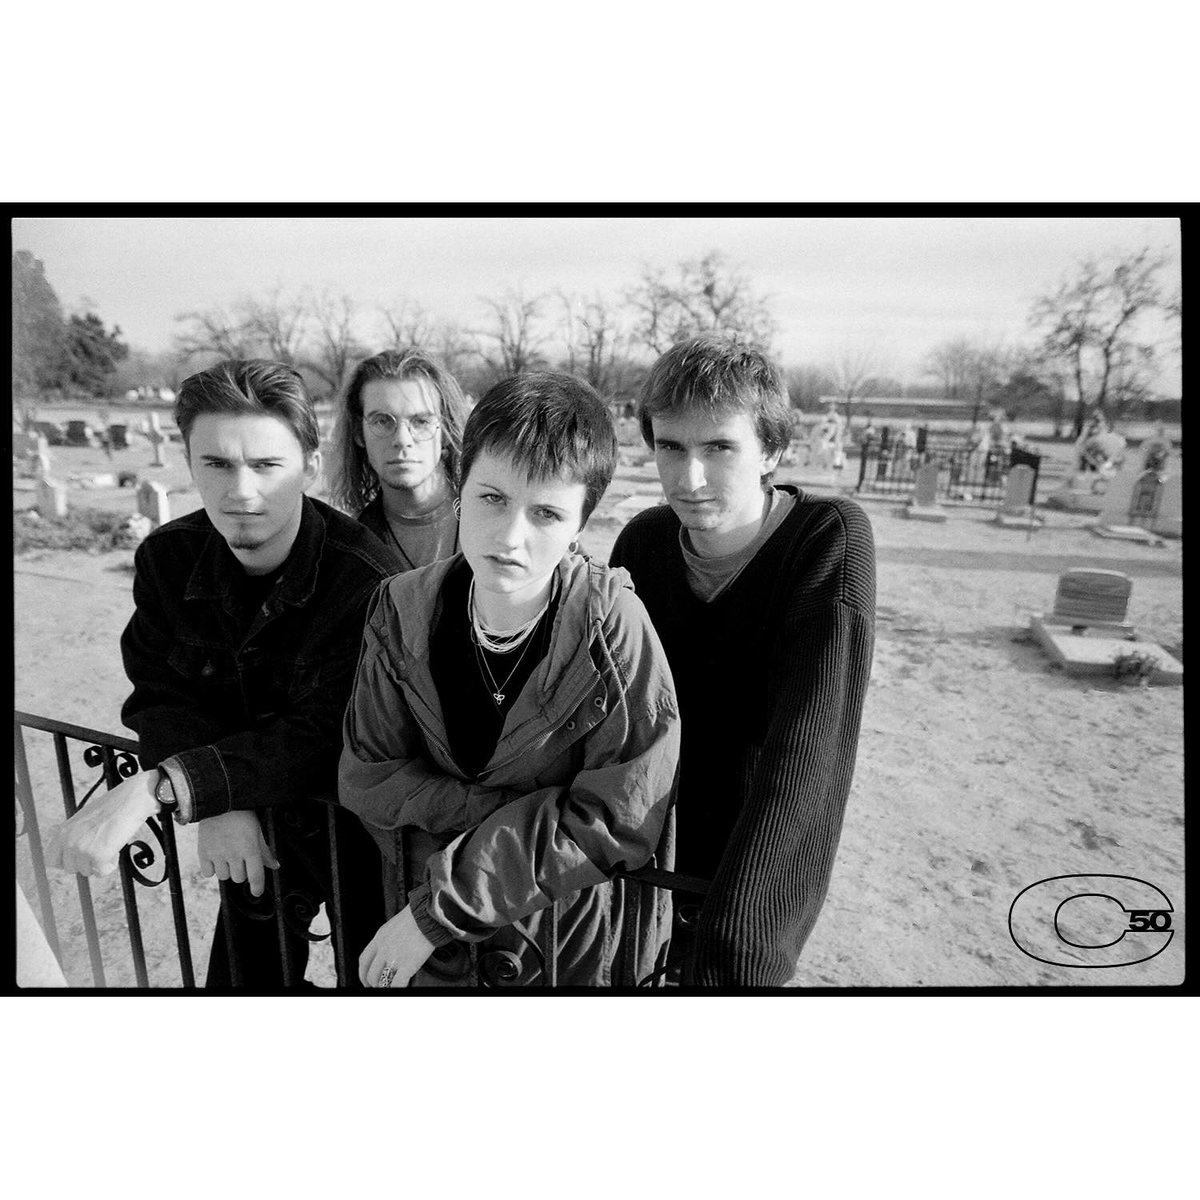 Rare photo! Las Cruces, NM, 1993
#TheCranberries #ChrisCuffaro
instagram.com/p/C6Kn5mqJUF-/